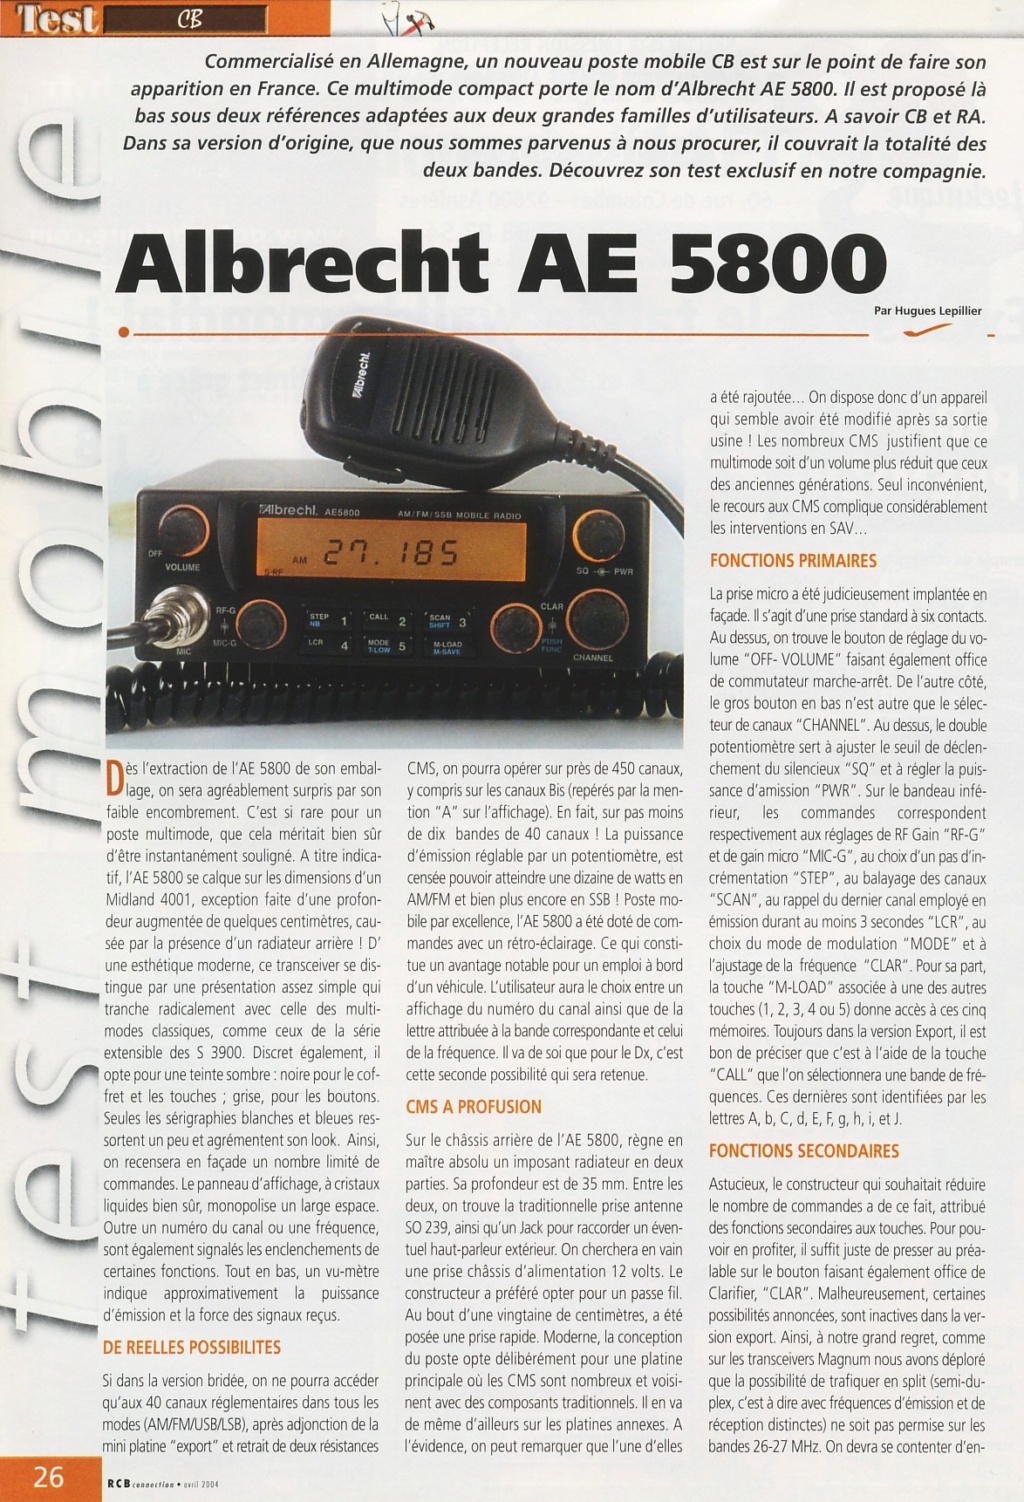 Albrecht AE 5800 EU (Mobile) Ae580010